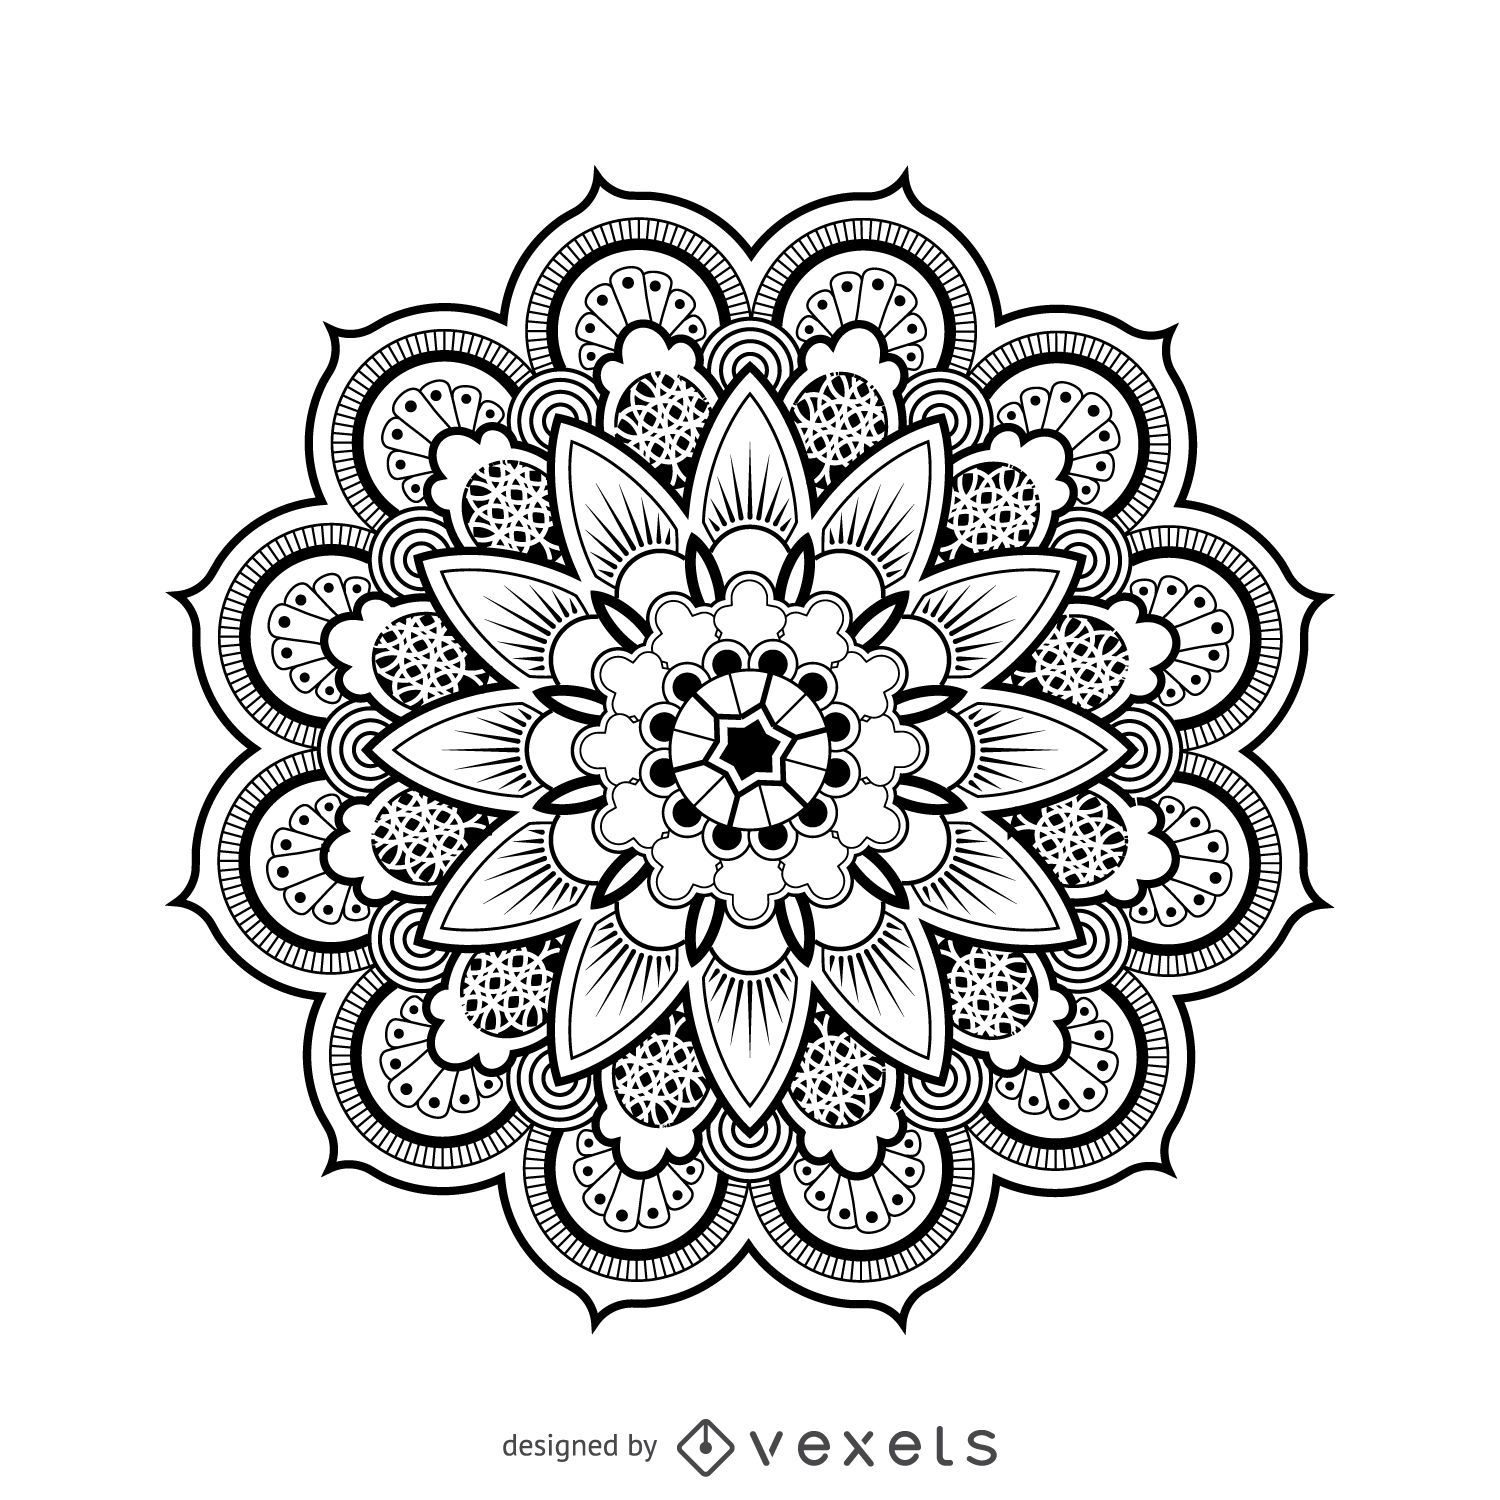 Descarga Vector De Dibujo De Diseño De Mandala